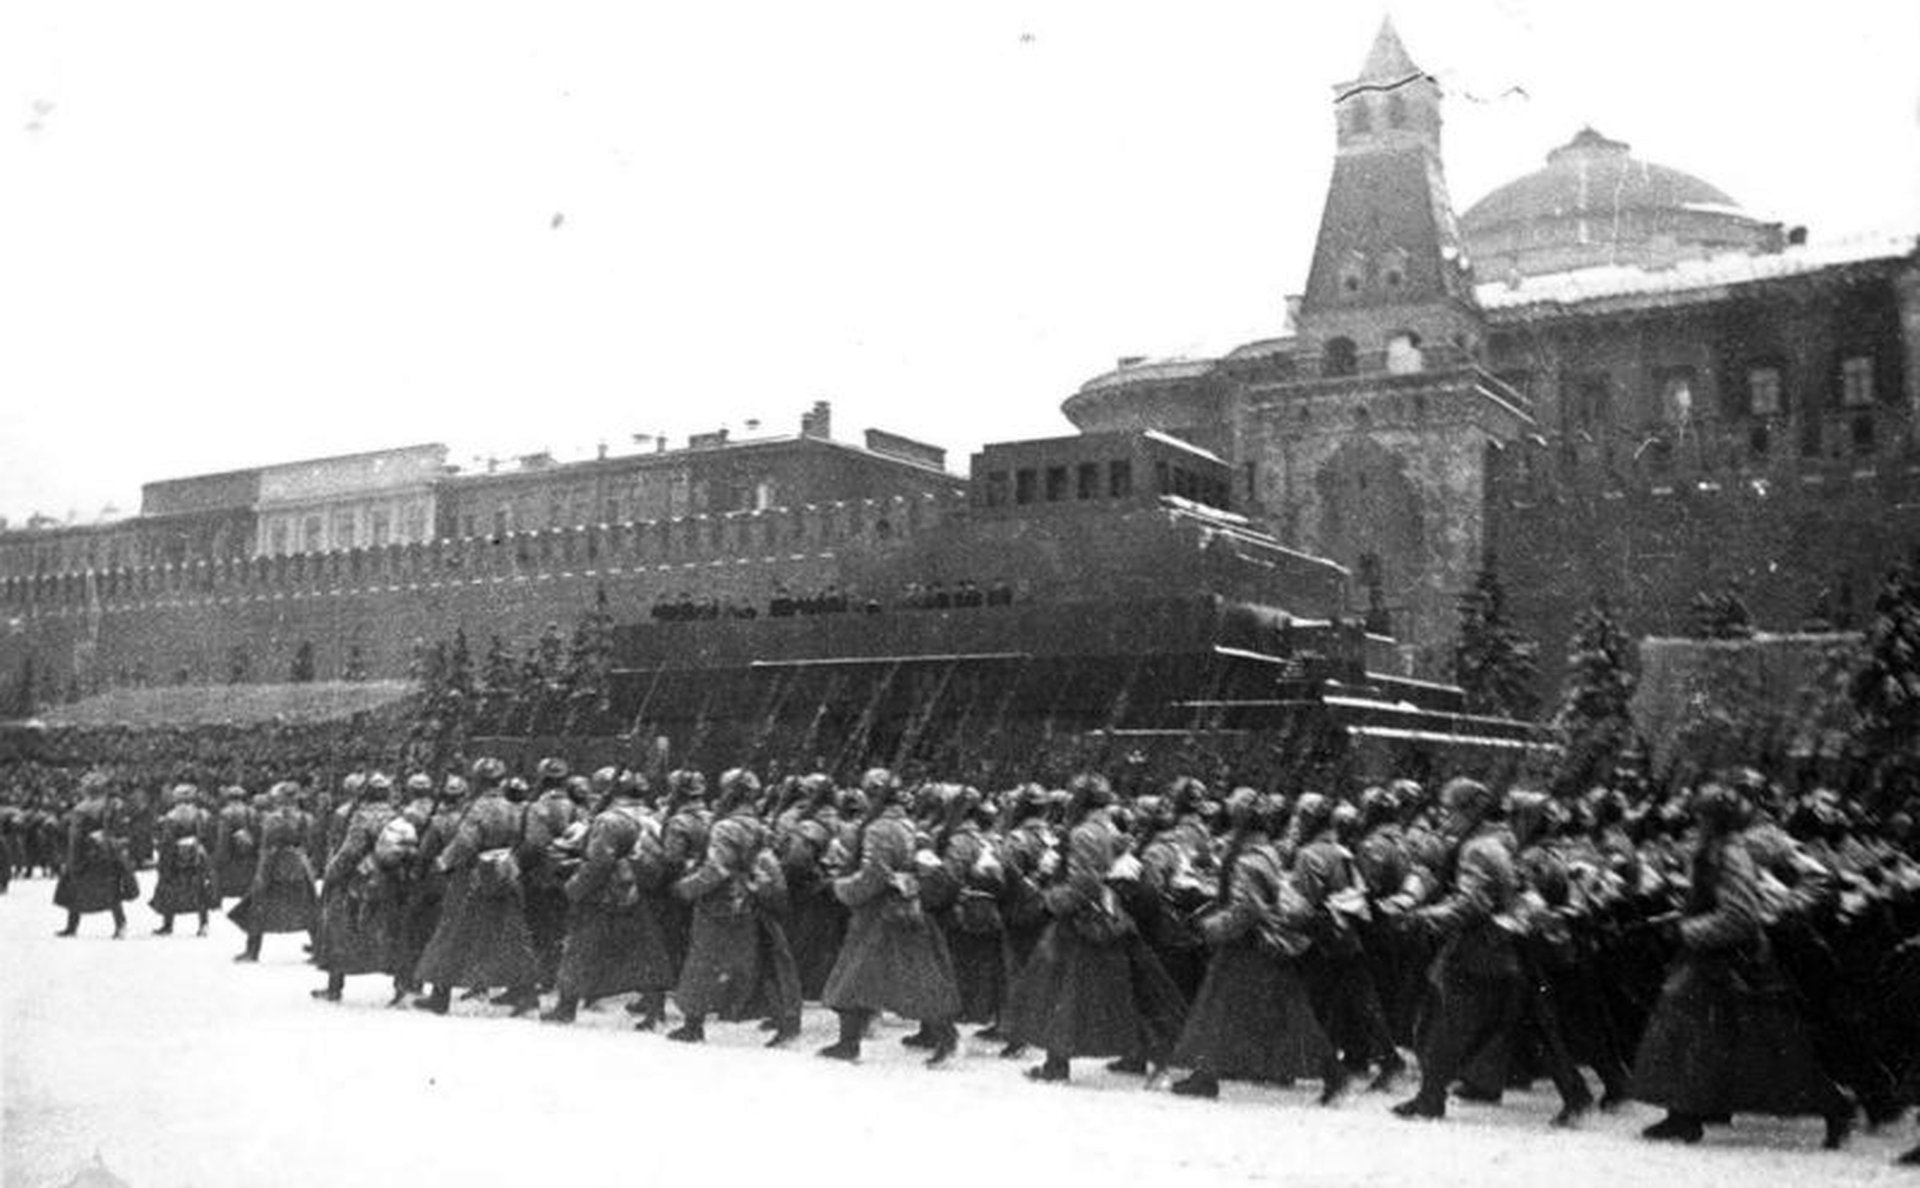 Парад 1941г